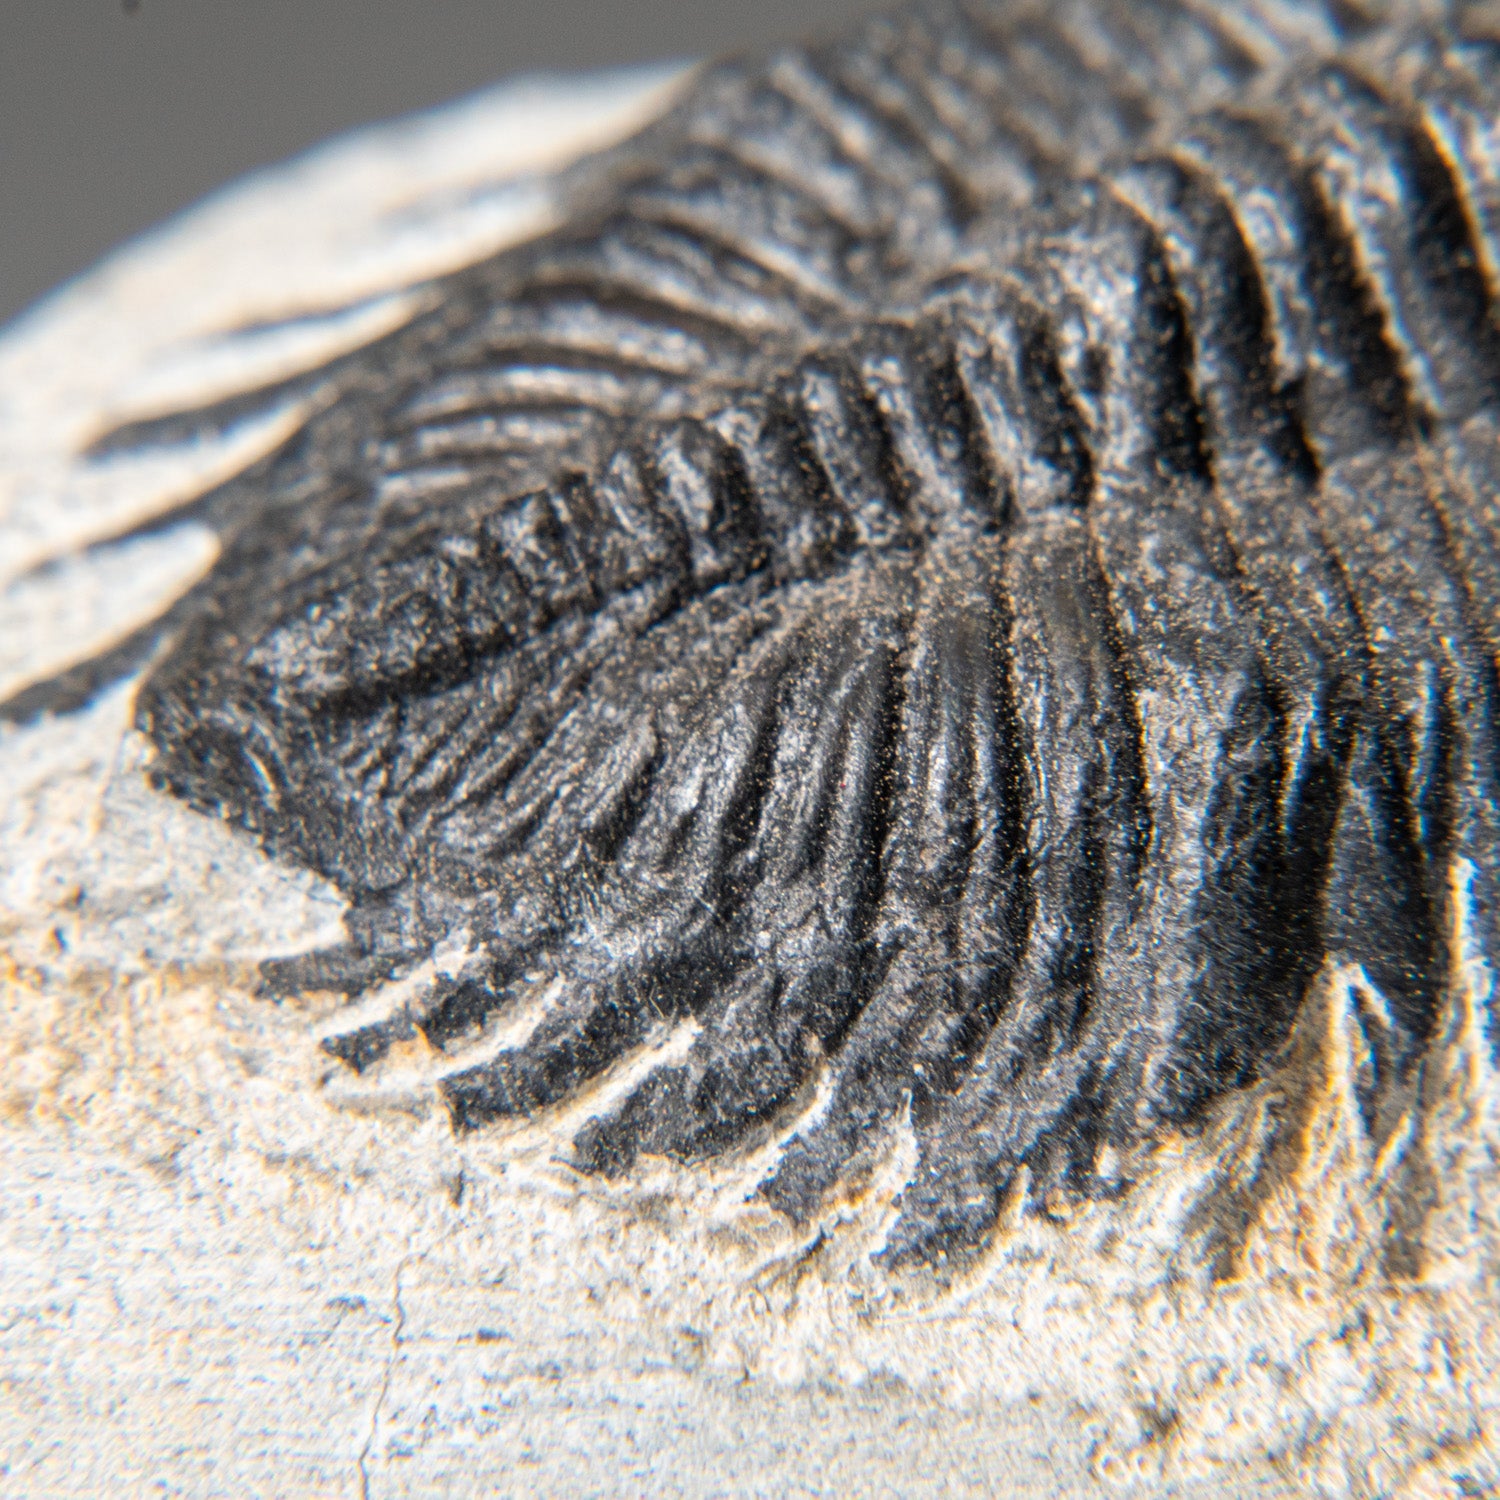 Genuine Trilobite Fossil (Ptychopariida) on Matrix (184.4 grams)